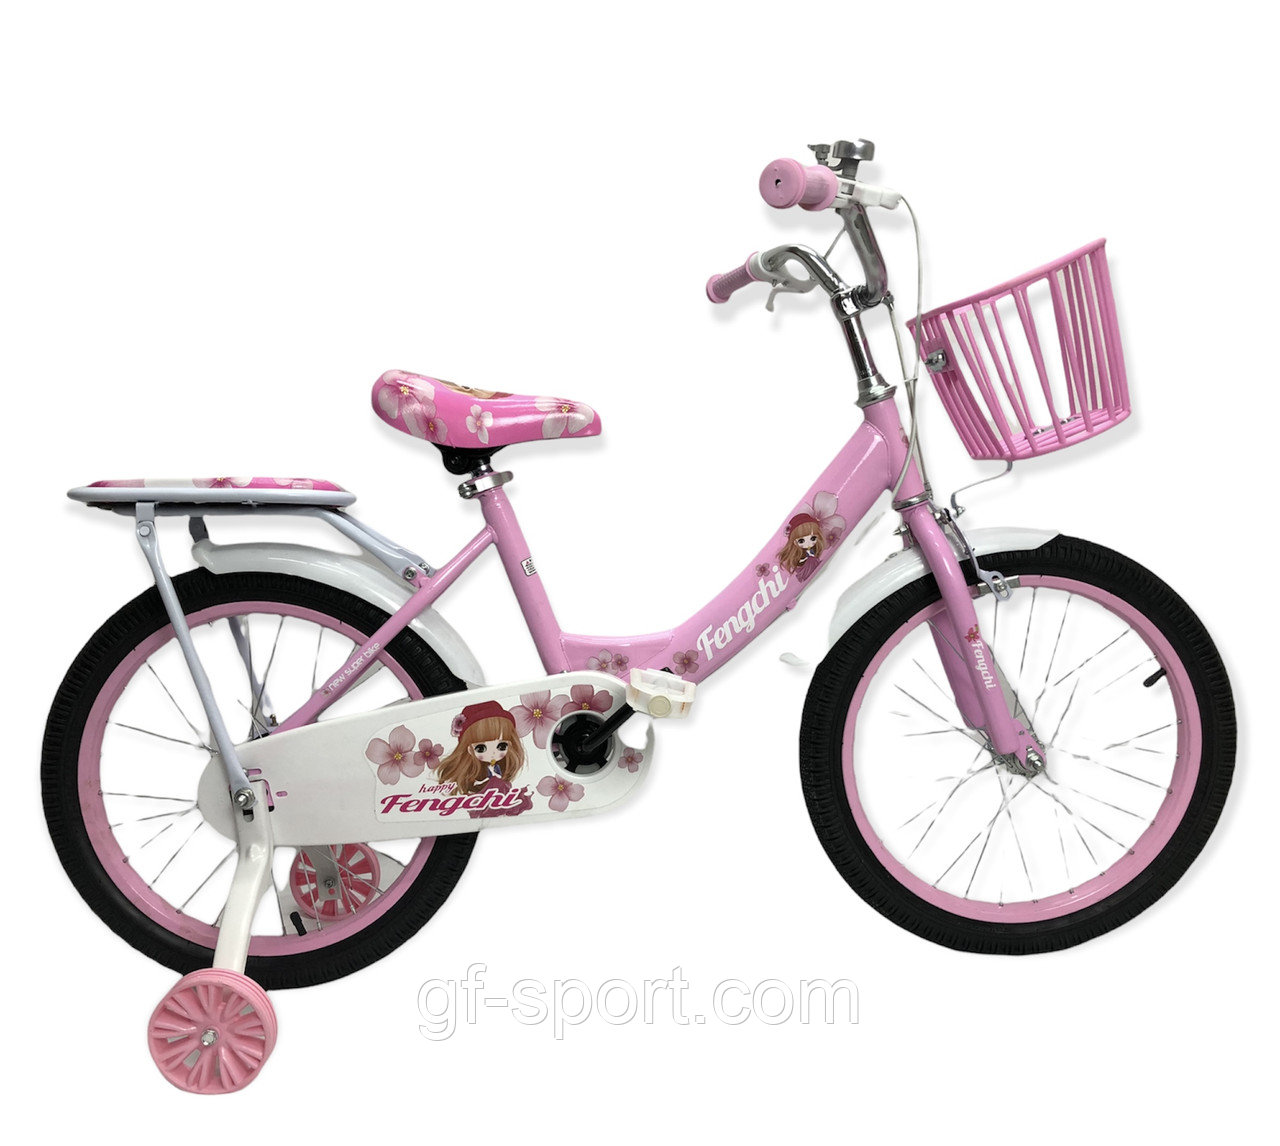 Велосипед Bubabi Baby розовый оригинал детский с холостым ходом 18 размер (502-18)